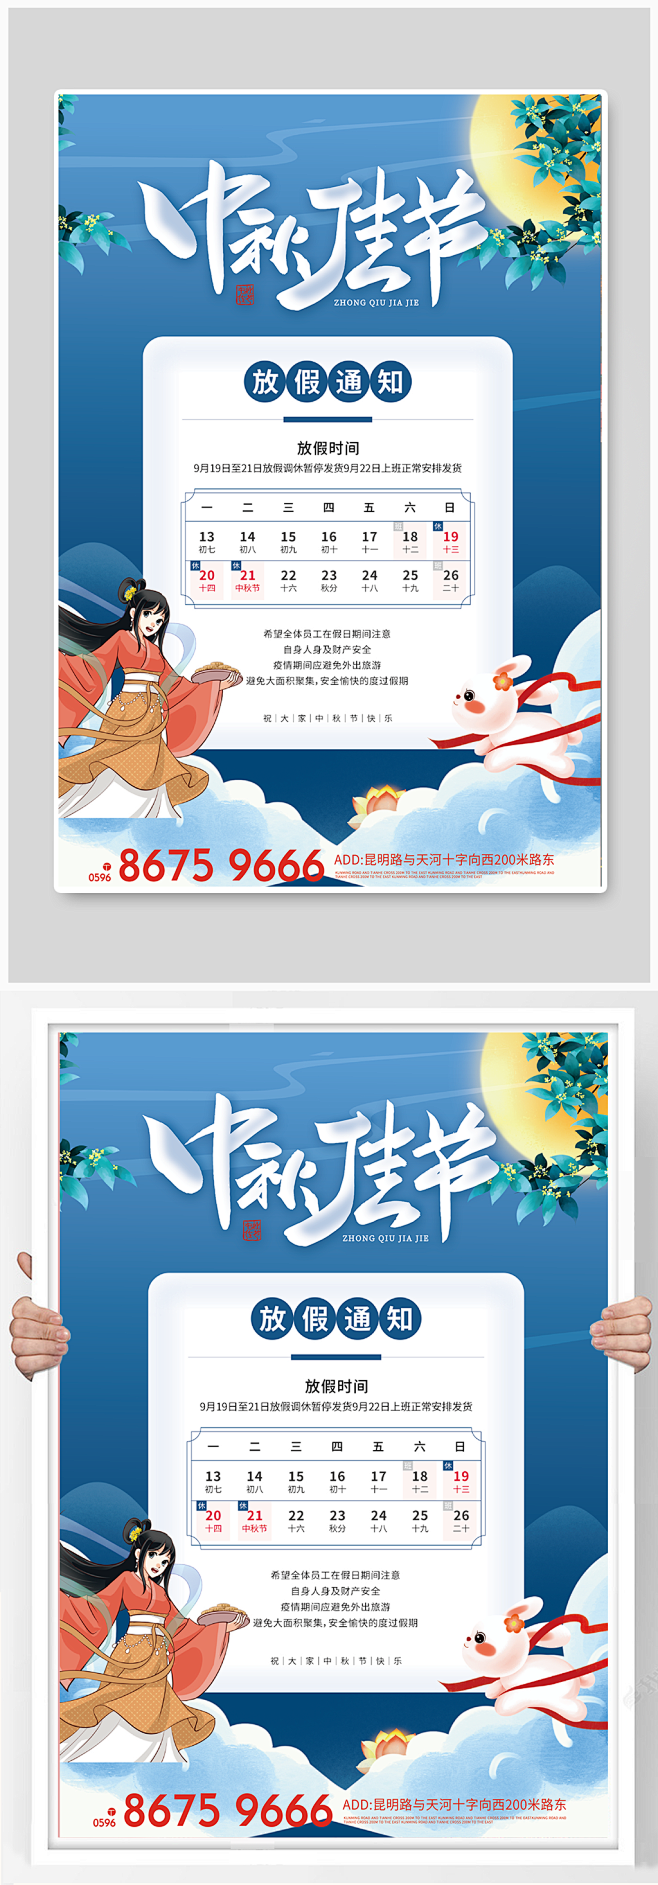 中秋节放假通知橙色创意海报